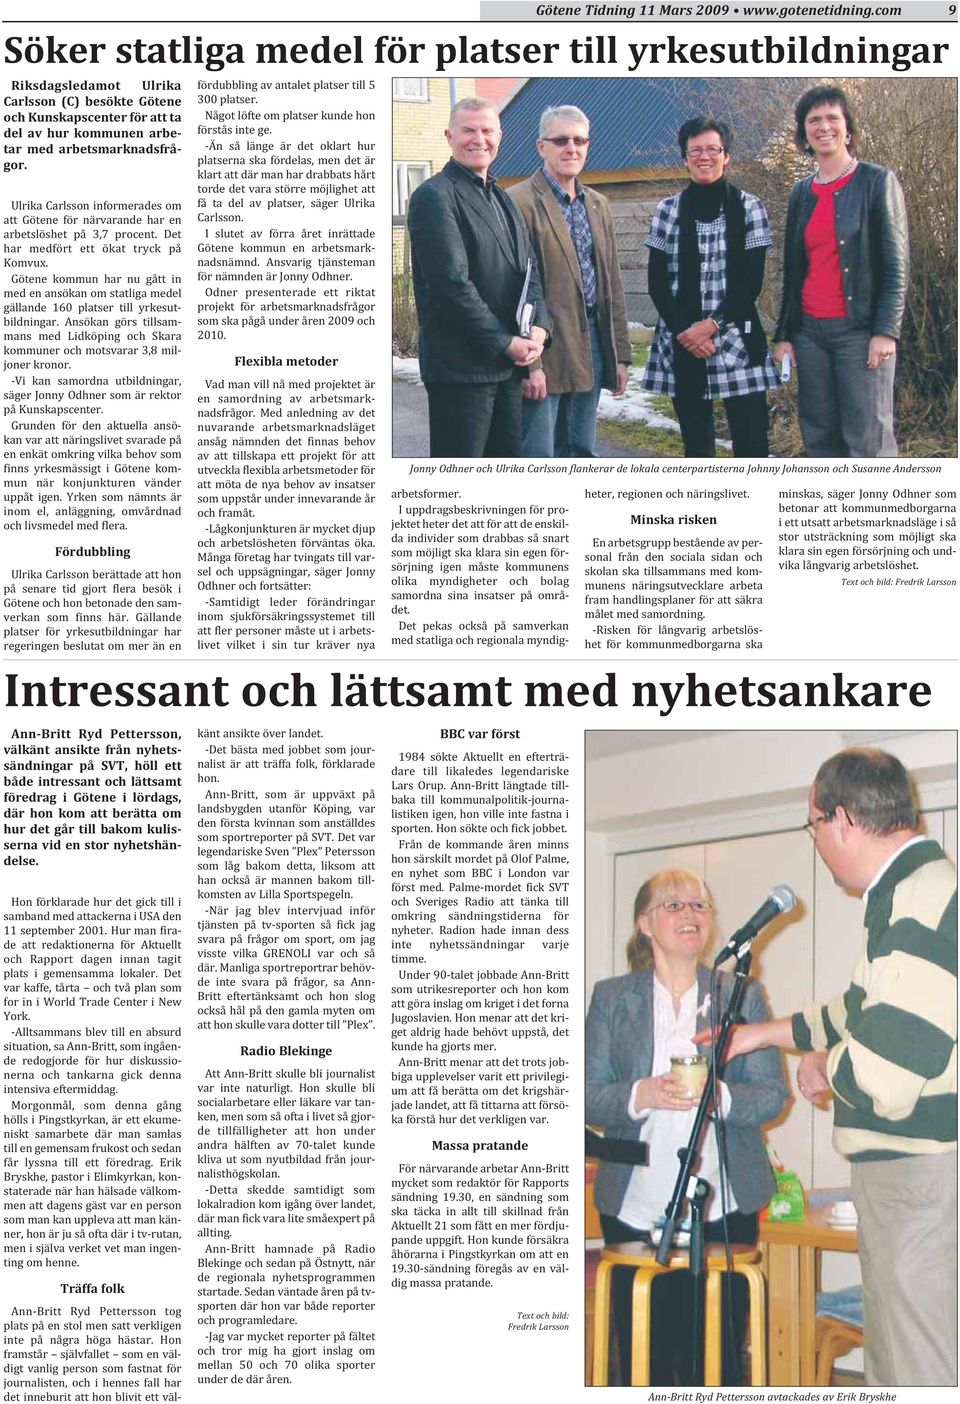 Götene kommun har nu gått in med en ansökan om statliga medel gällande 160 platser till yrkesutbildningar. Ansökan görs tillsammans med Lidköping och Skara kommuner och motsvarar 3,8 miljoner kronor.